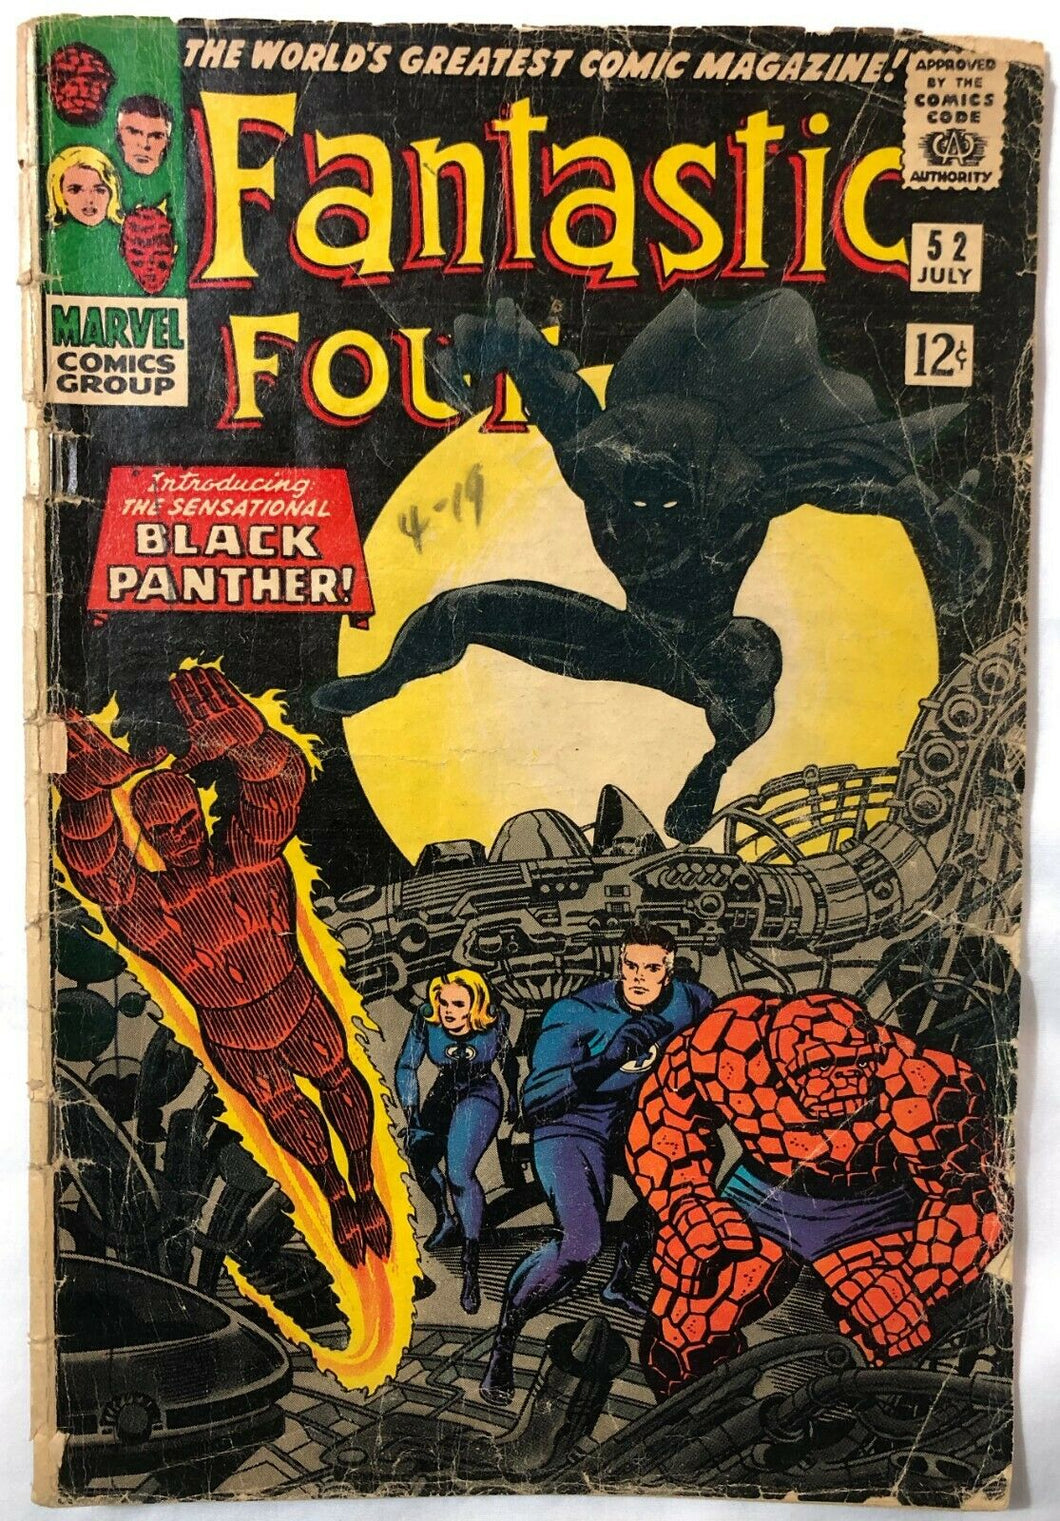 Fantastic Four #52 (1966, Marvel) 1st App. of Black Panther